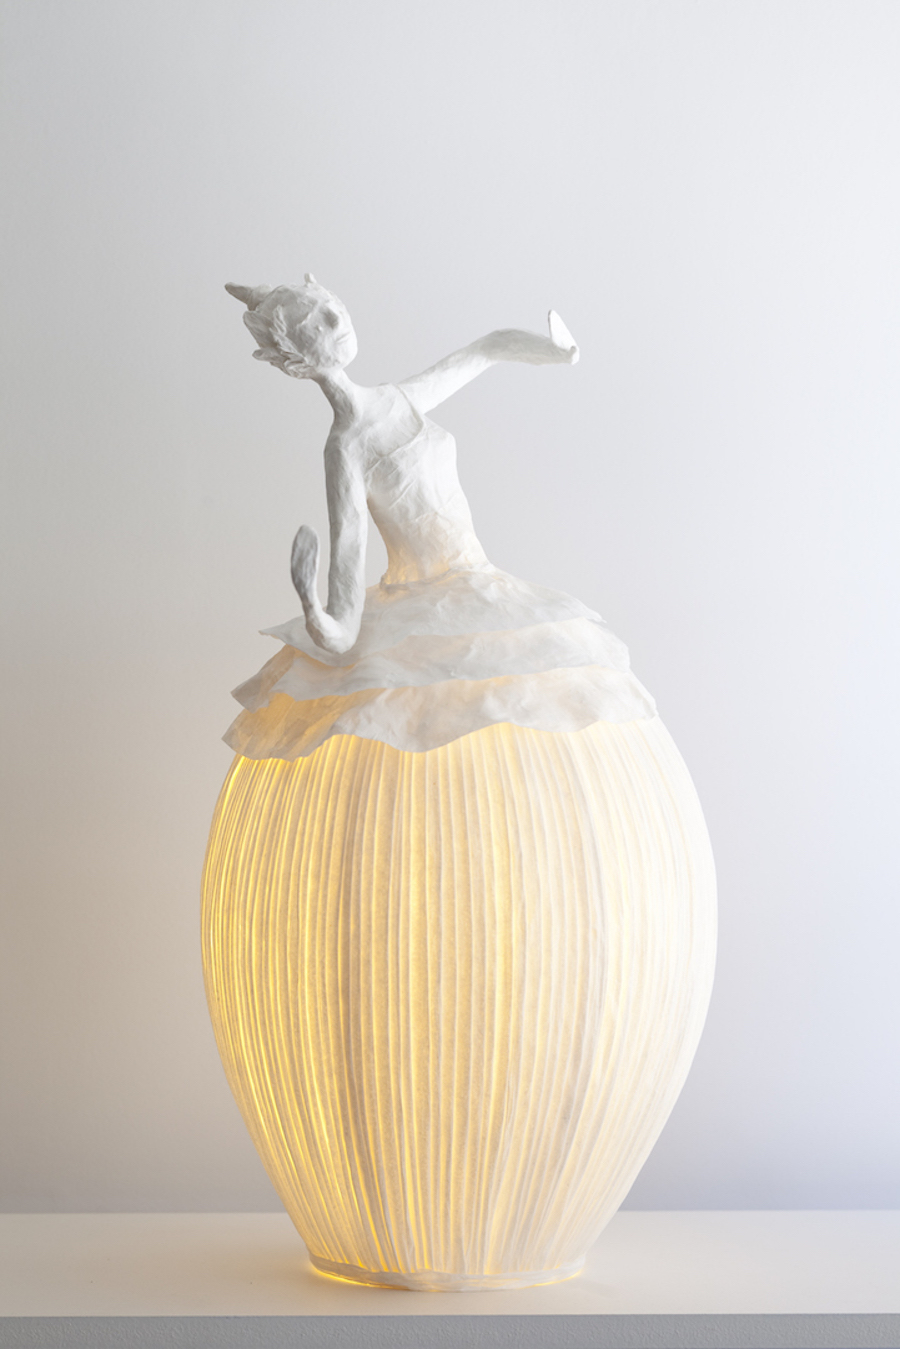 Papier-Mâché Lamp Sculptures2